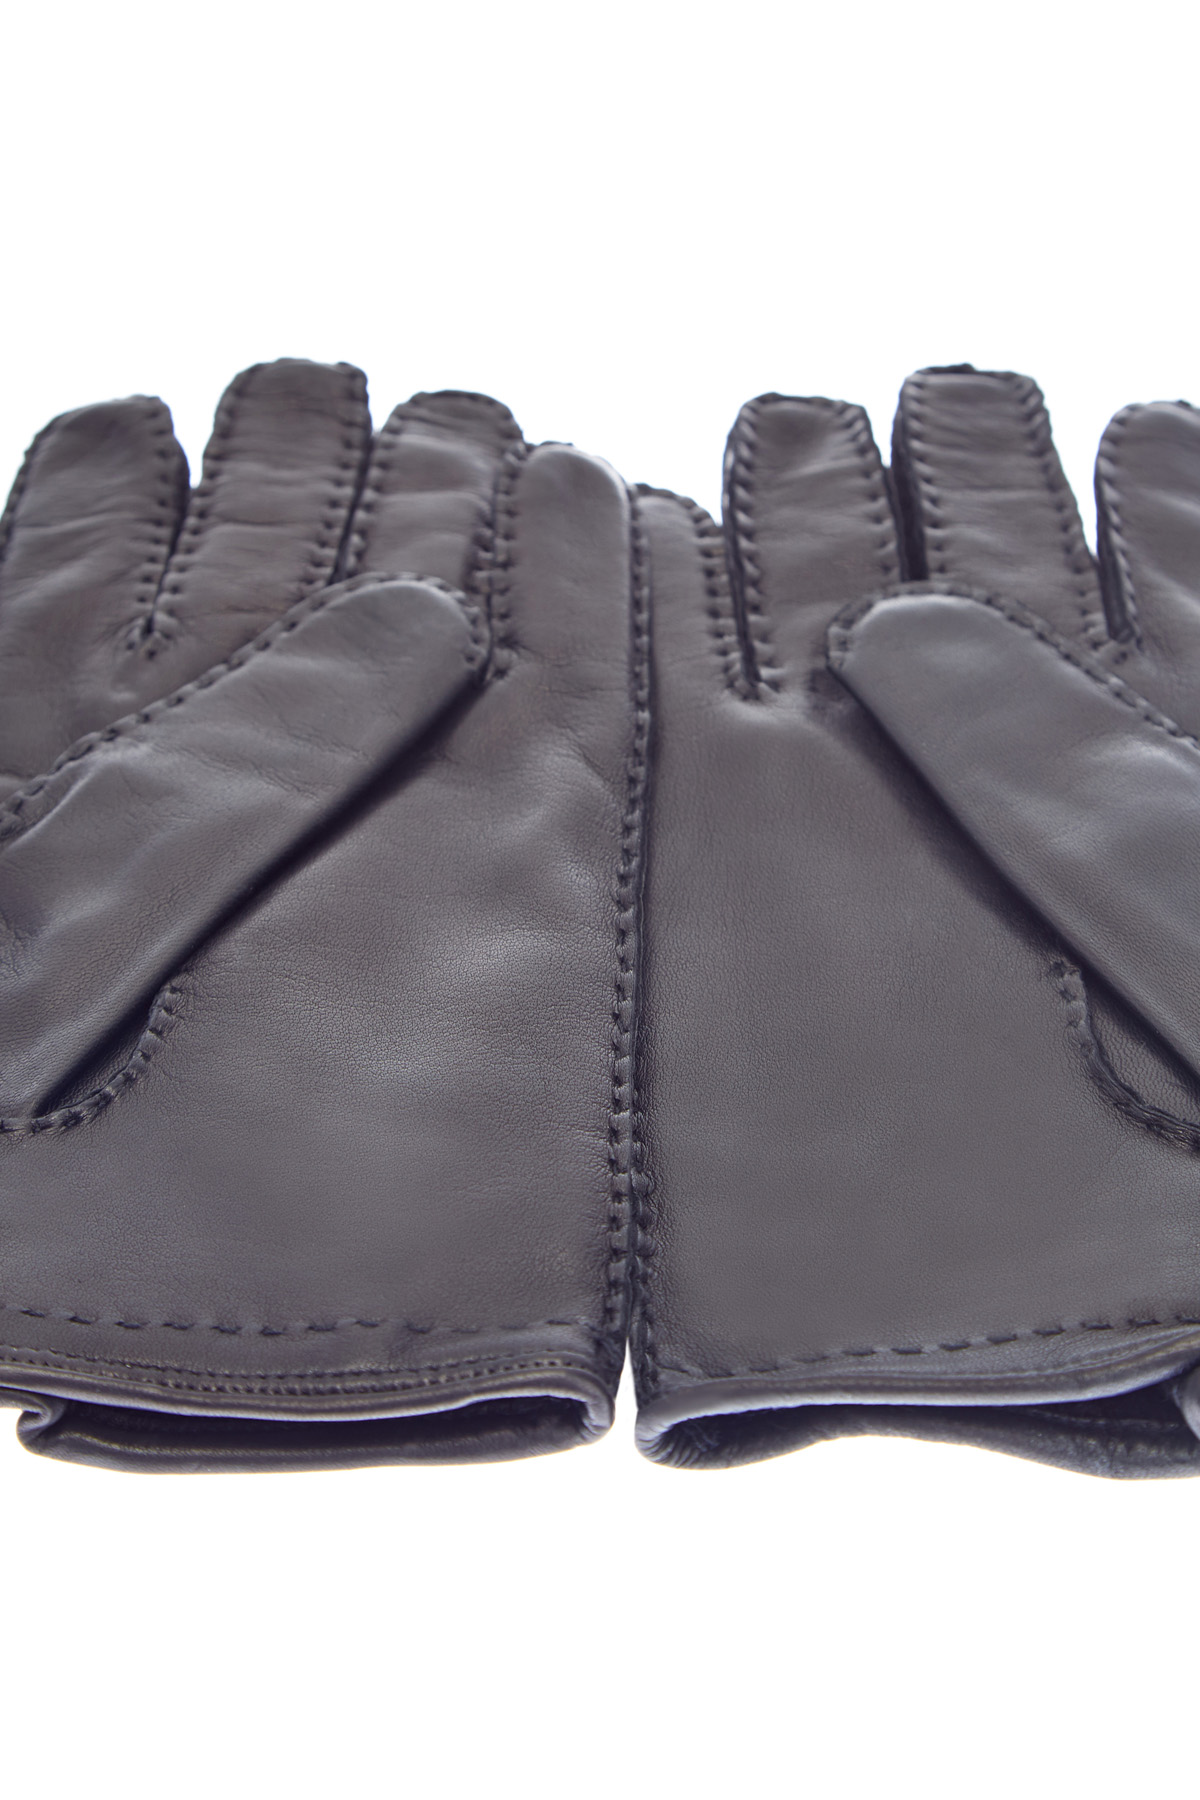 Перчатки ручной работы из гладкой кожи CORTIGIANI, цвет черный, размер L;XL;M - фото 2